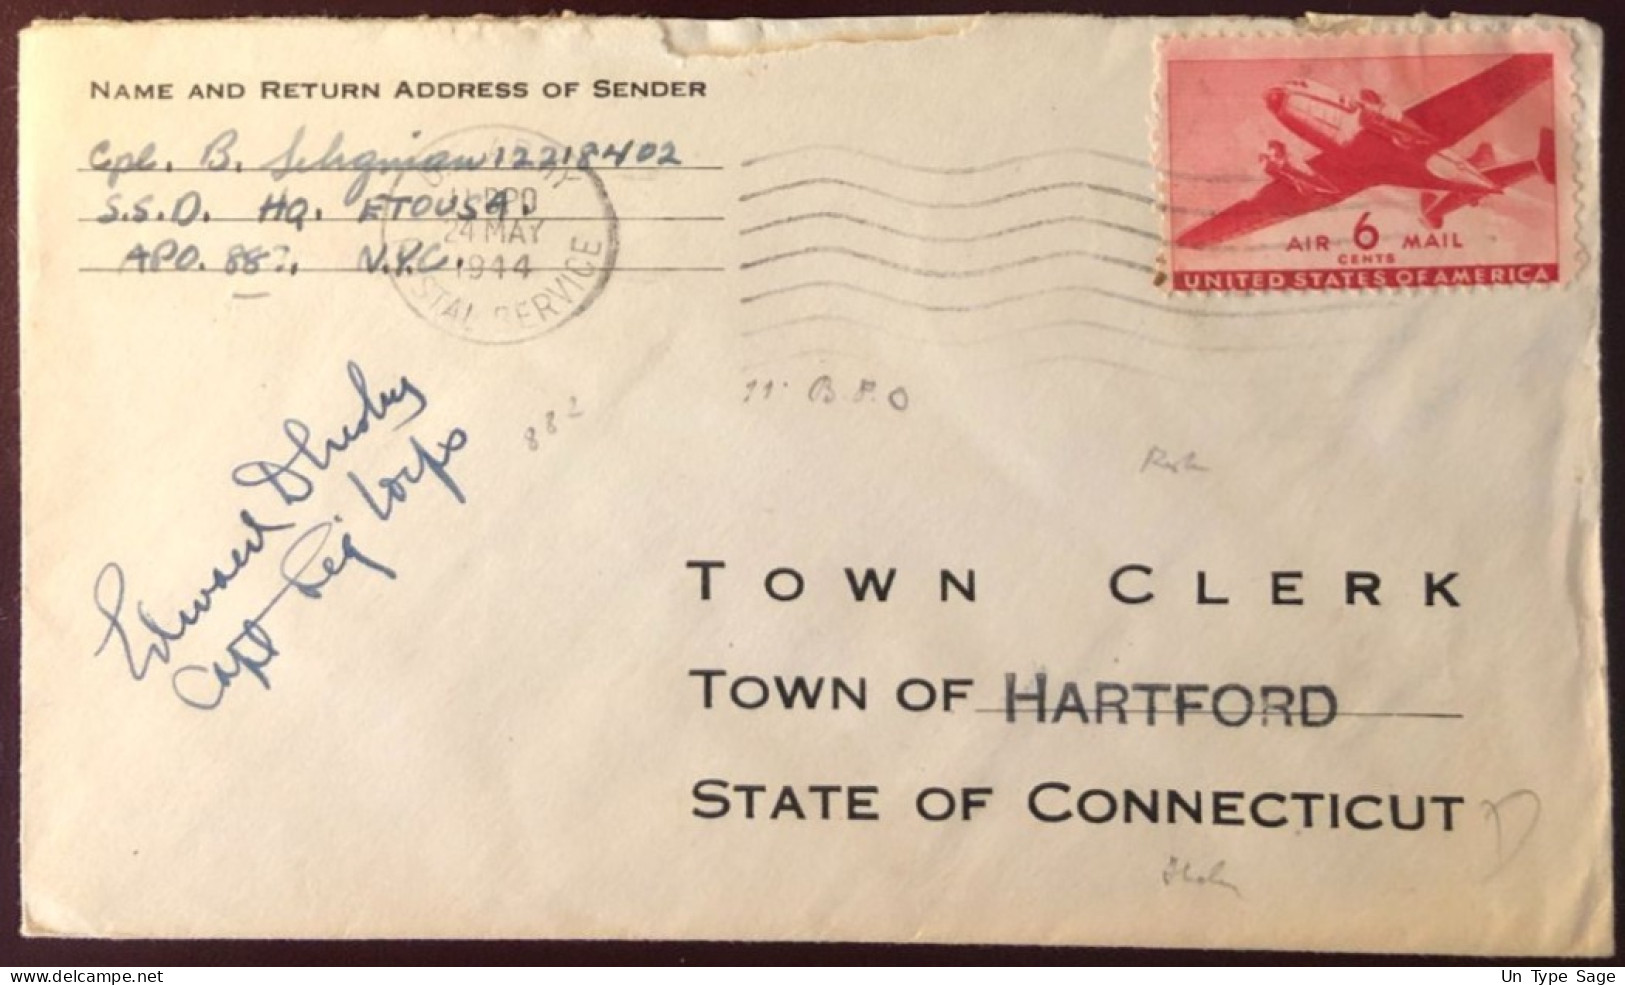 Etats-Unis, Divers Sur Enveloppe A.P.O. 882 Du 24.5.1944 Pour Hartford, CONN. - (B2746) - Poststempel